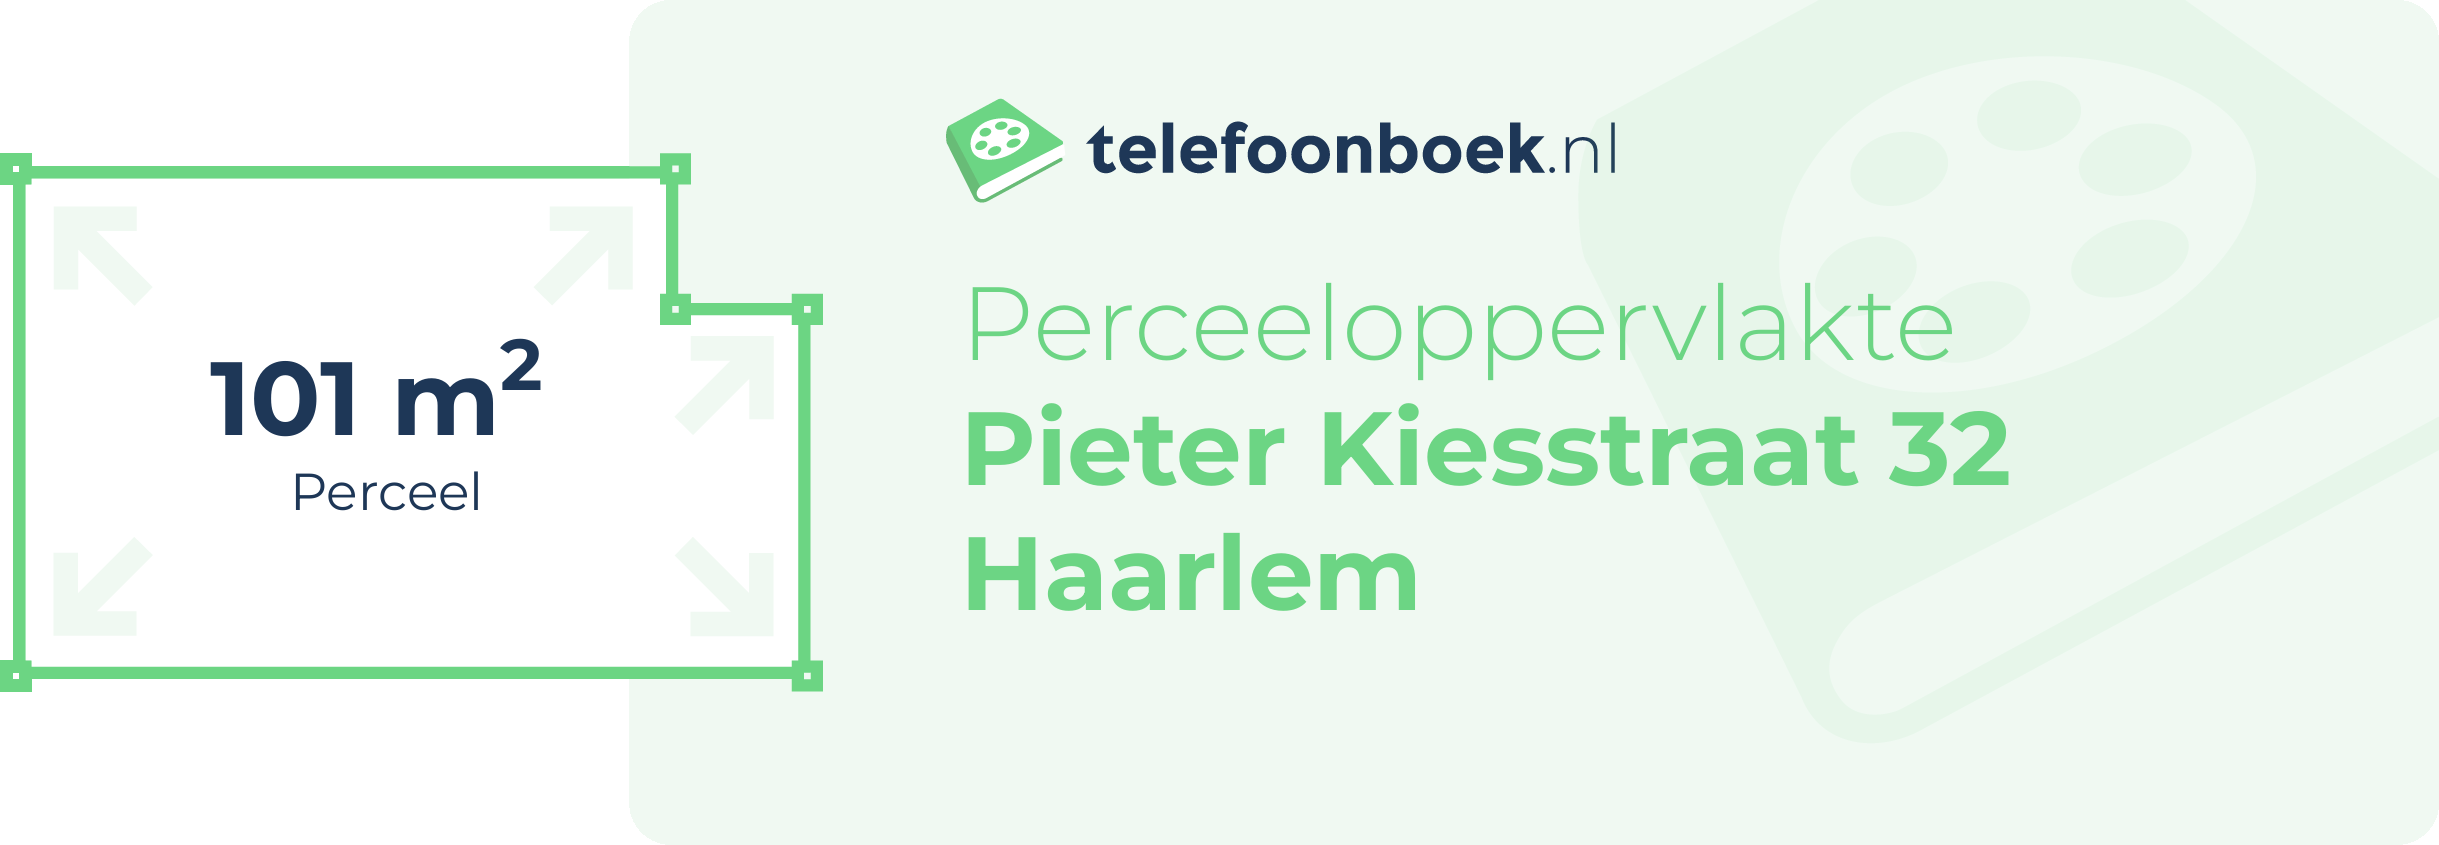 Perceeloppervlakte Pieter Kiesstraat 32 Haarlem